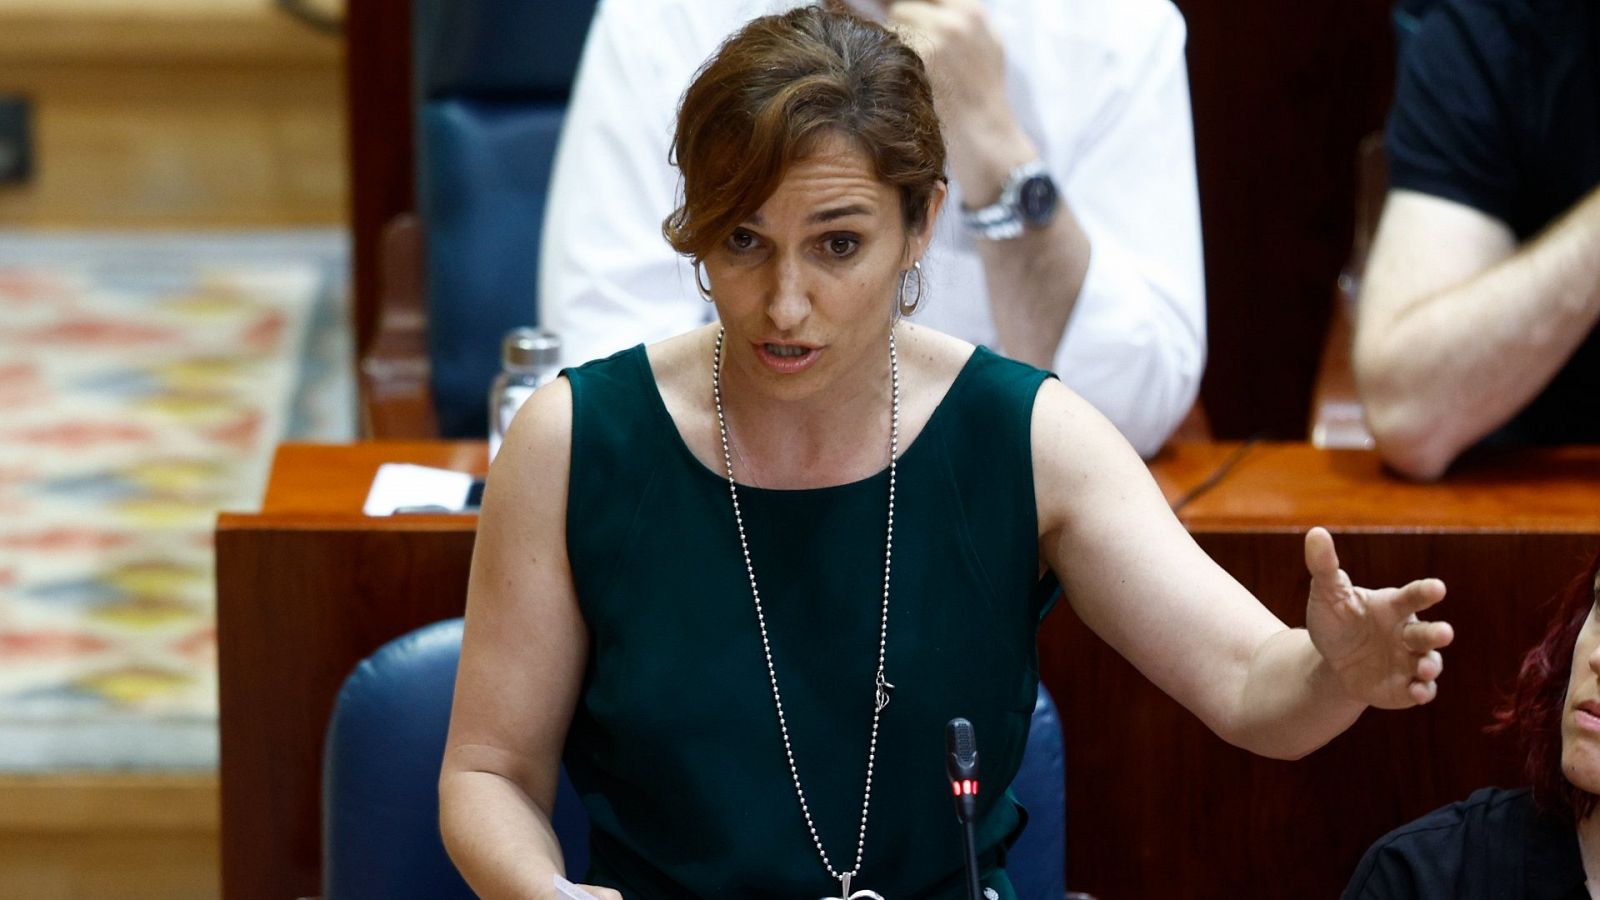 Mónica García carga contra Ayuso: "Estamos viendo la peor cara de la política más inútil"